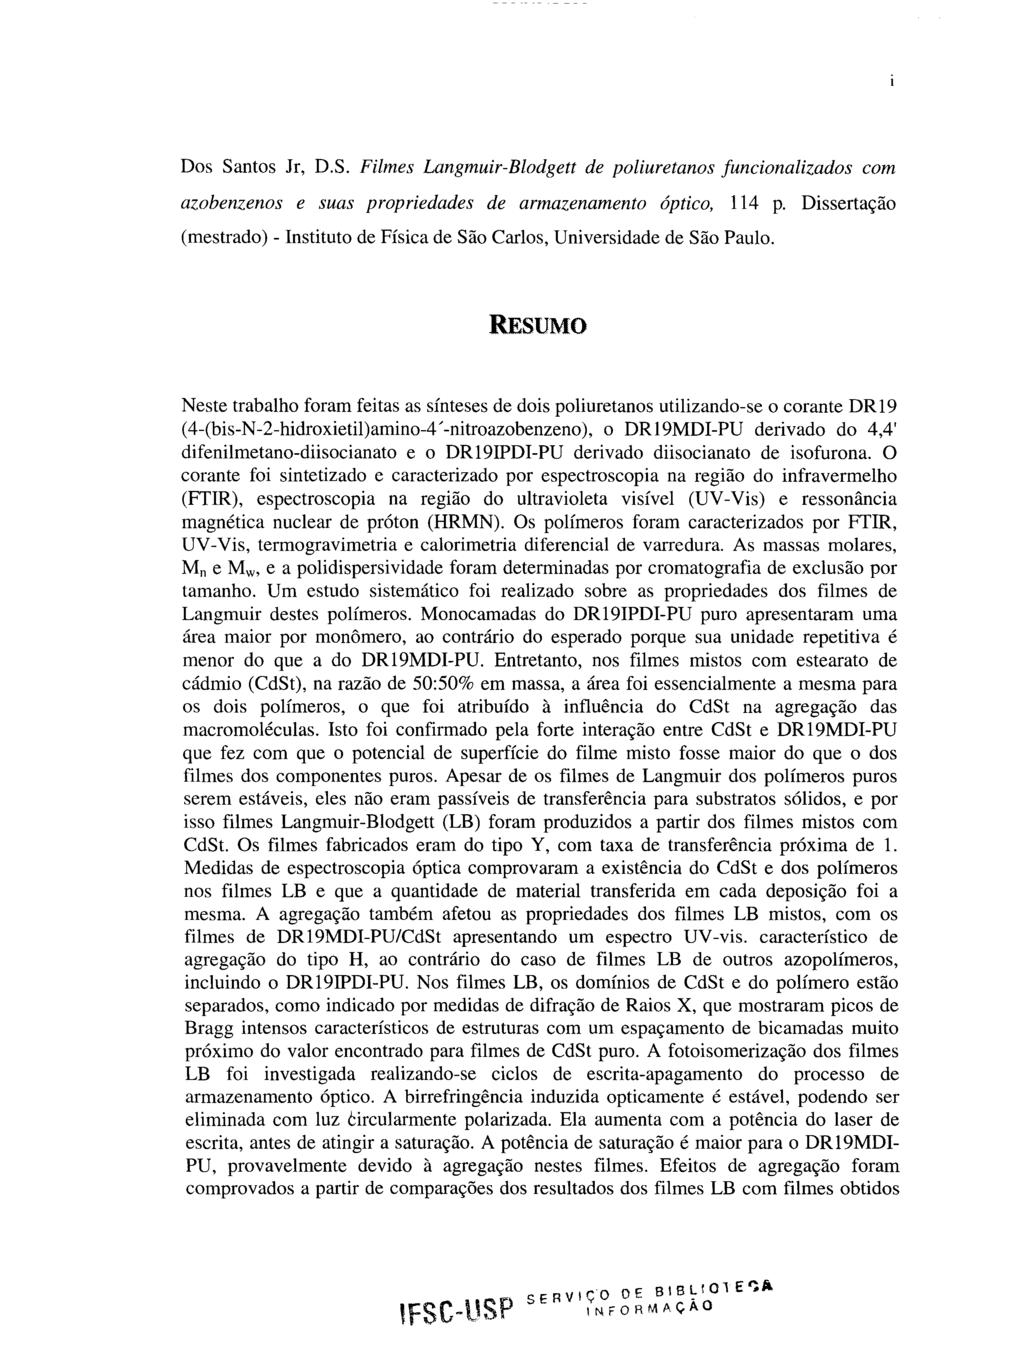 Dos Santos Jr, D.S. Filmes Langmuir-Blodgett de poliuretanos funcionalizados com azobenzenos e suas propriedades de armazenamento óptico, 114 p.